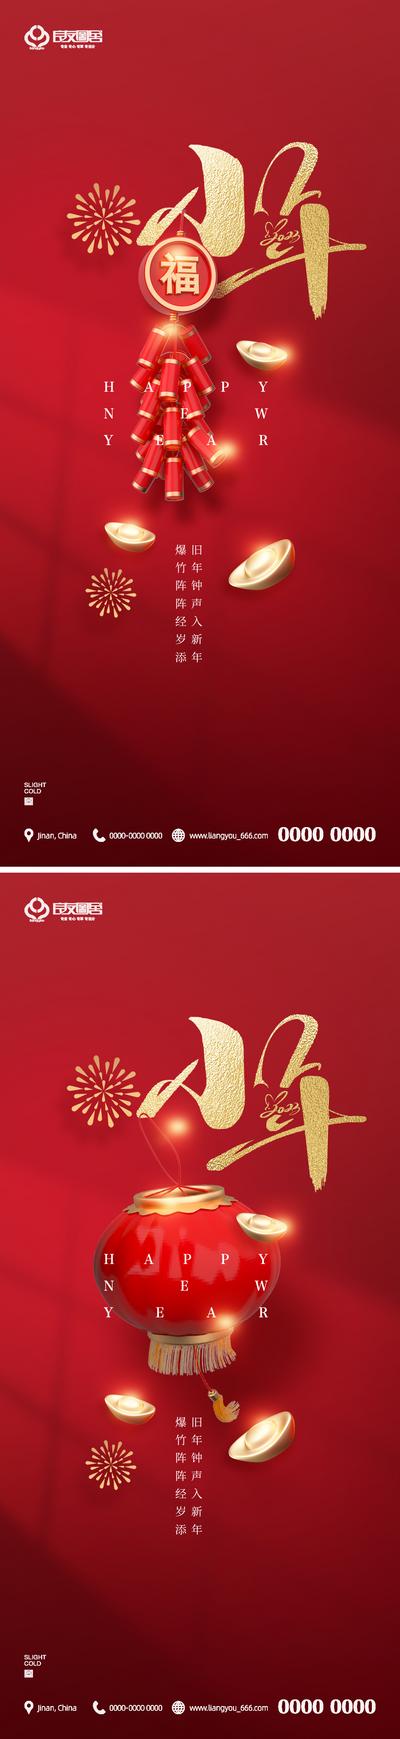 南门网 海报 房地产 小年 新年 中国传统节日 鞭炮 灯笼 金元宝 红金